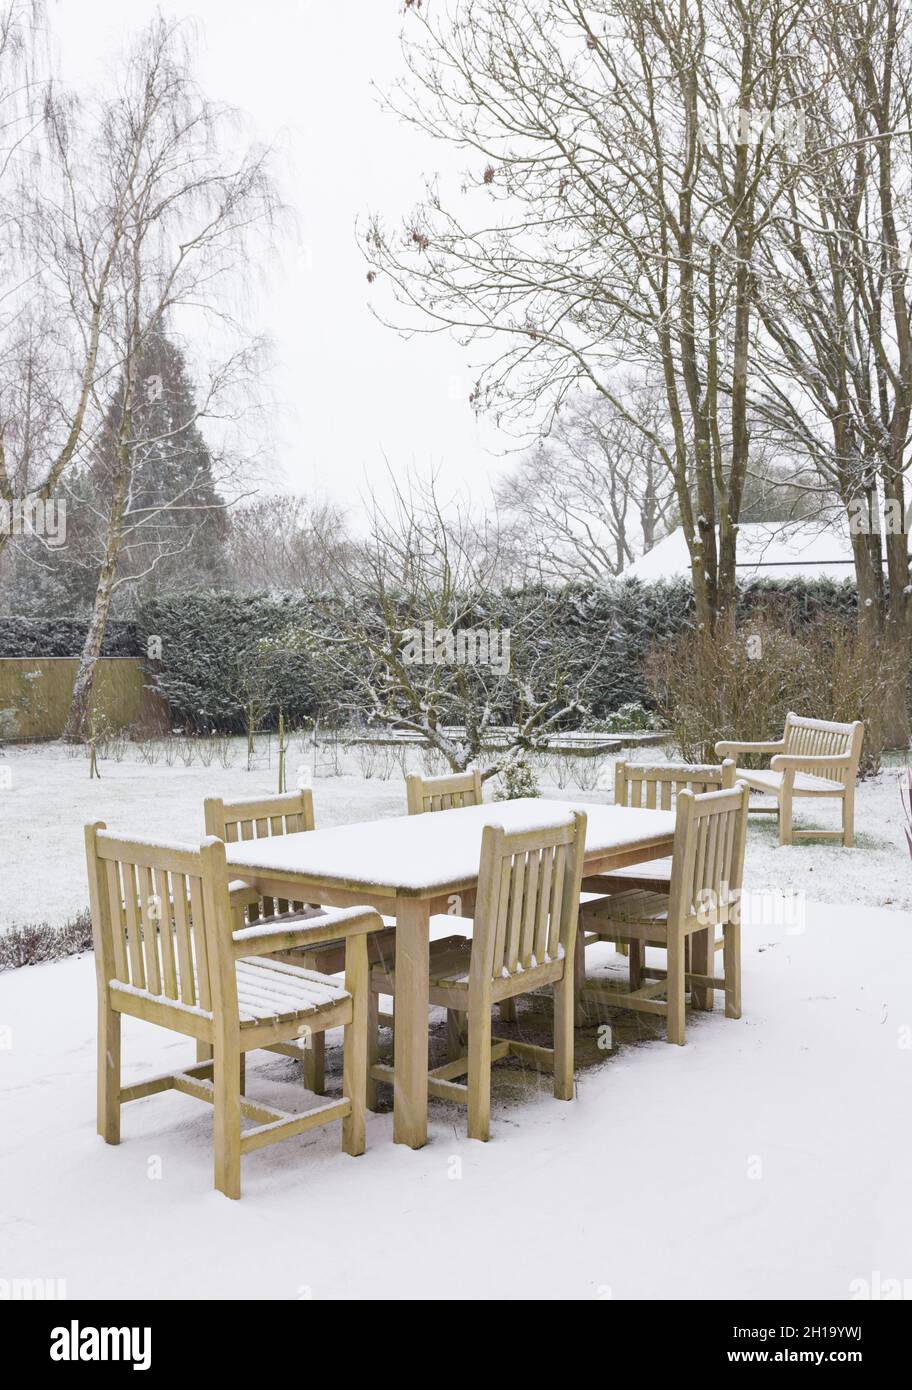 Chute de neige sur le mobilier de jardin en hiver, Royaume-Uni.Table et chaises en bois de teck dans une grande cour arrière Banque D'Images